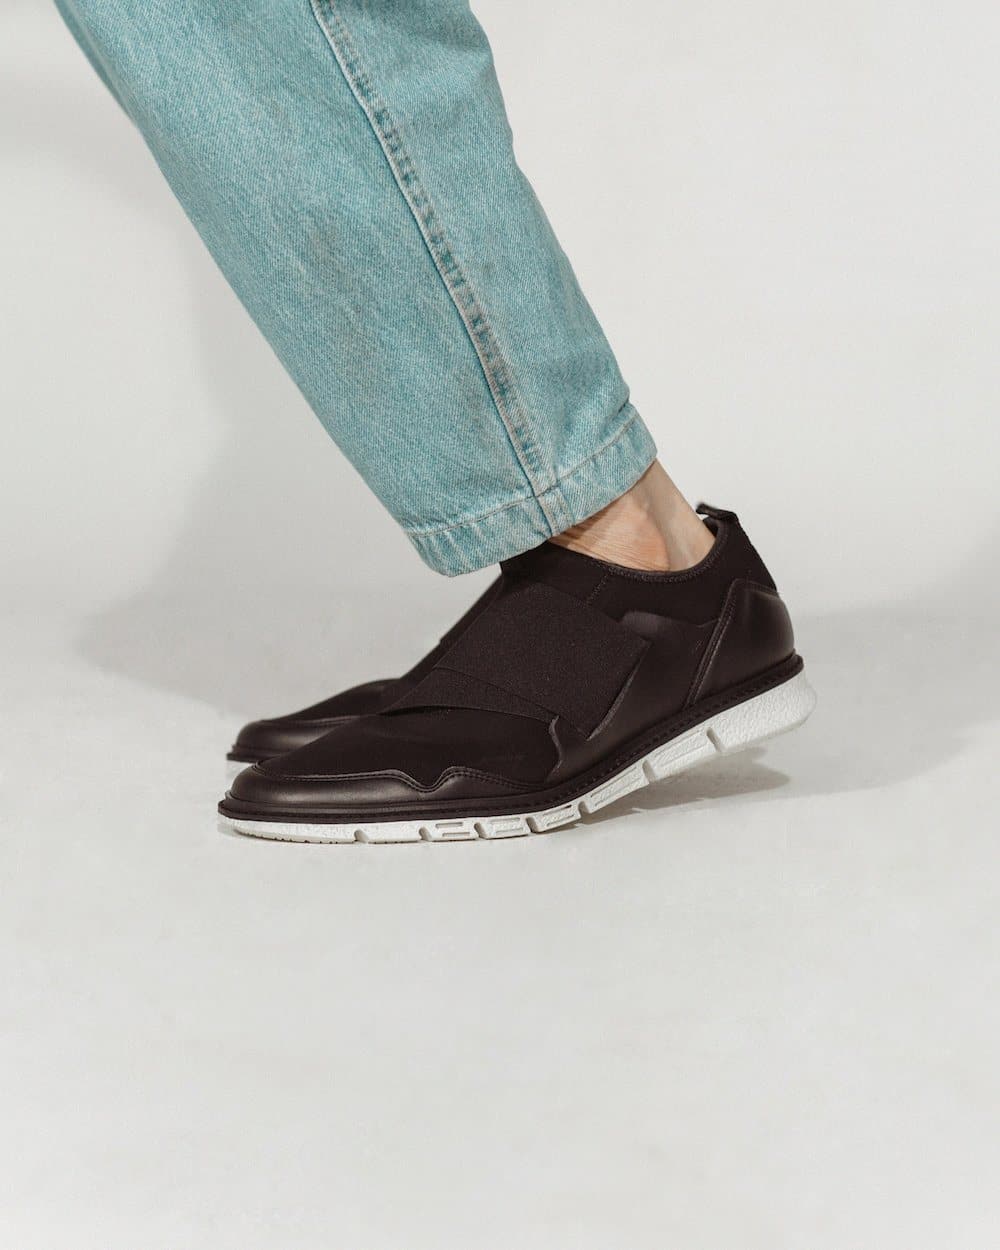 'Caspar' - men's vegan sneaker by Zette Shoes - black